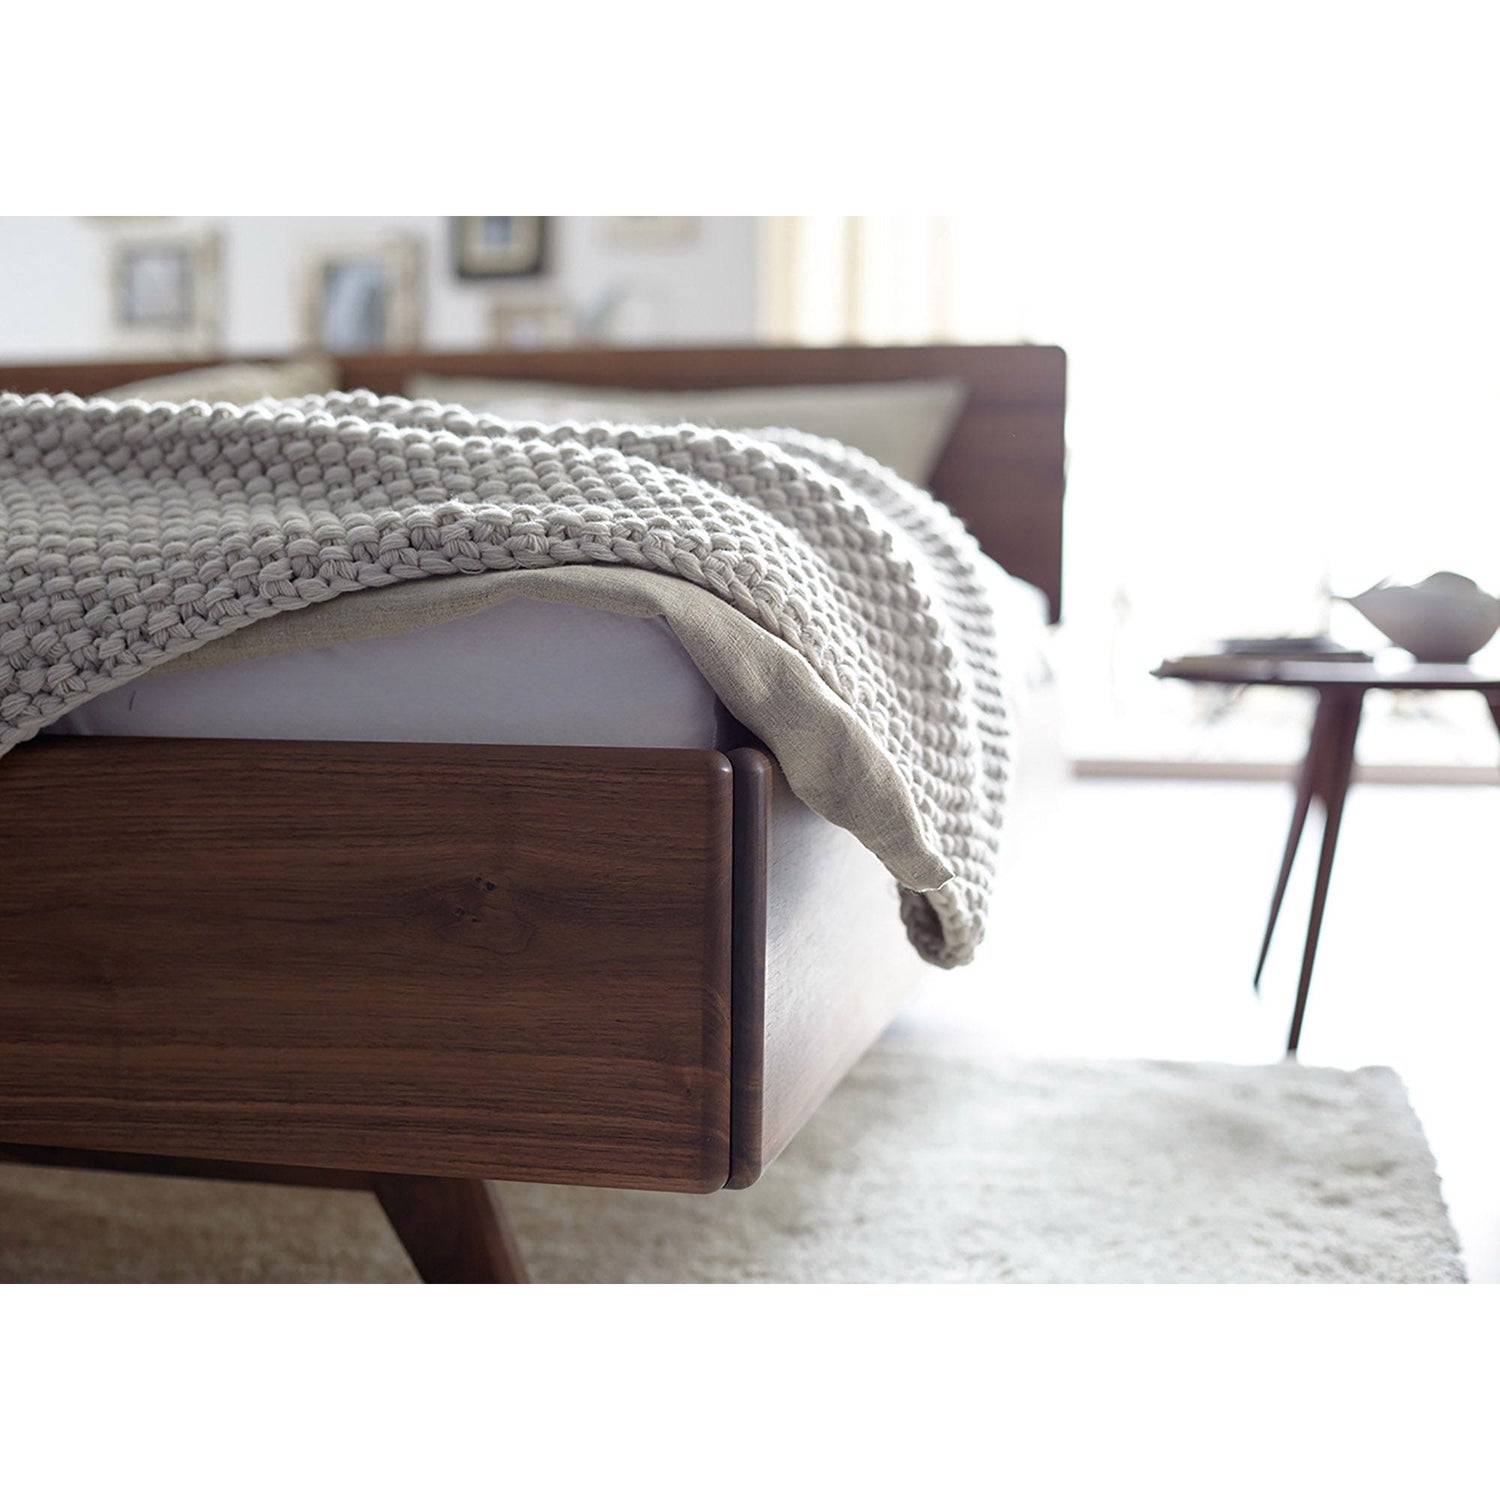 Bett DONNA aus Massivholz im Bettenfachgeschäft für Massivholzbetten und Massivholzmöbel - ökologisch und nachhaltig